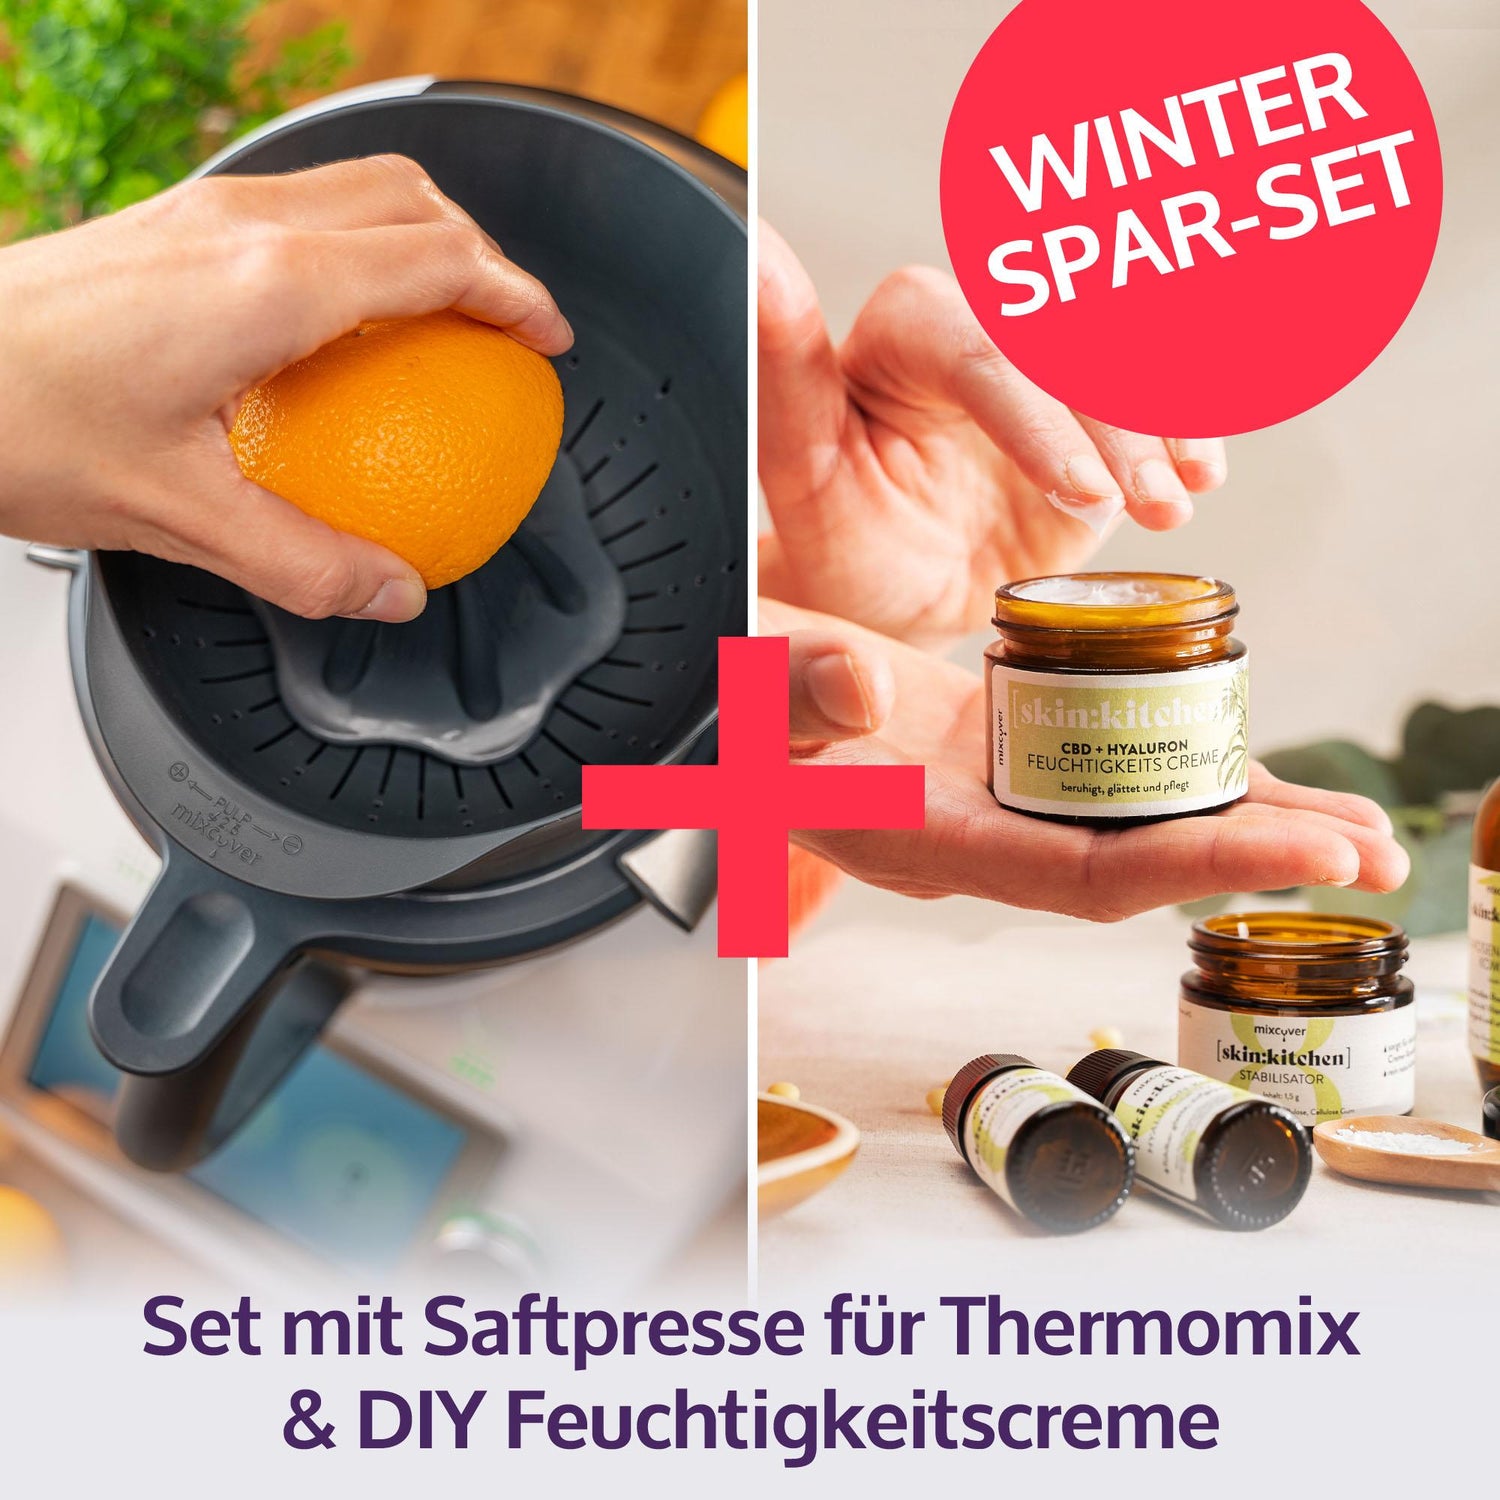 Destille für dem Thermomix: Ganz einfach mit dem Thermomix